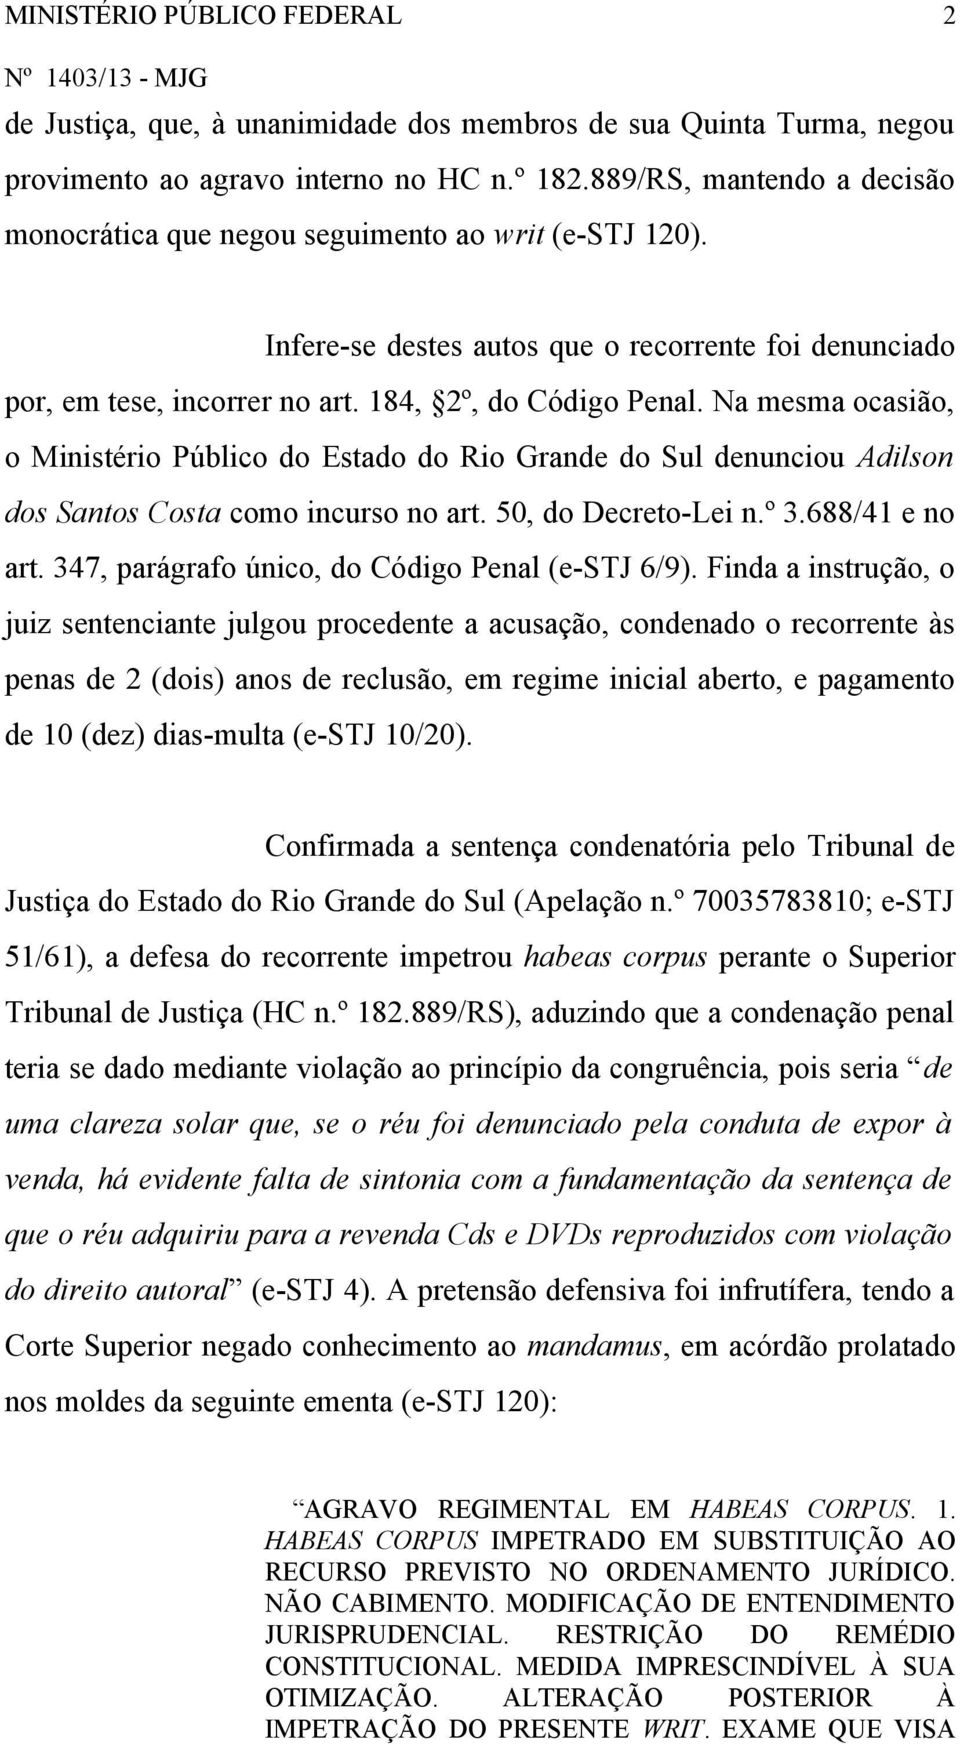 Na mesma ocasião, o Ministério Público do Estado do Rio Grande do Sul denunciou Adilson dos Santos Costa como incurso no art. 50, do Decreto-Lei n.º 3.688/41 e no art.